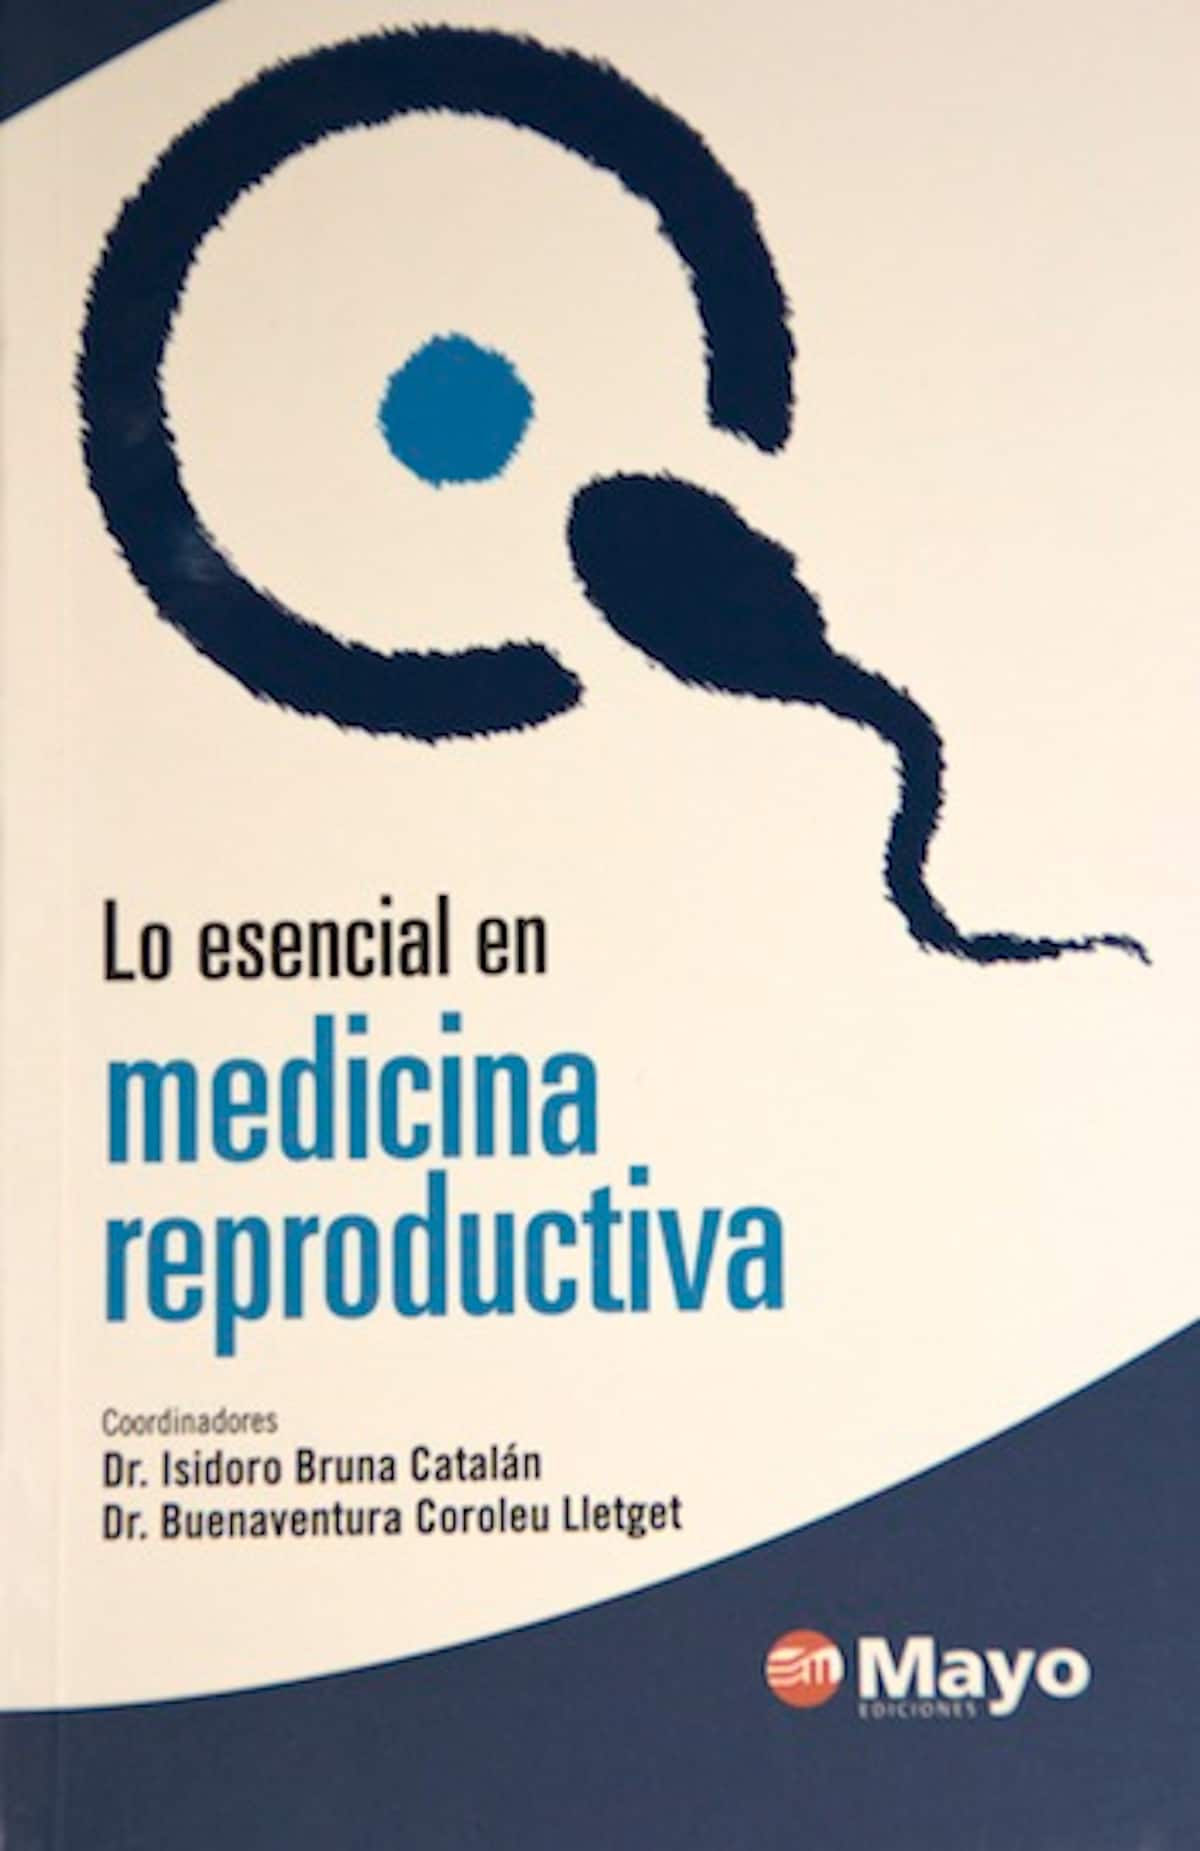 Portada libro "Lo esencial en Medicina Reproductiva"